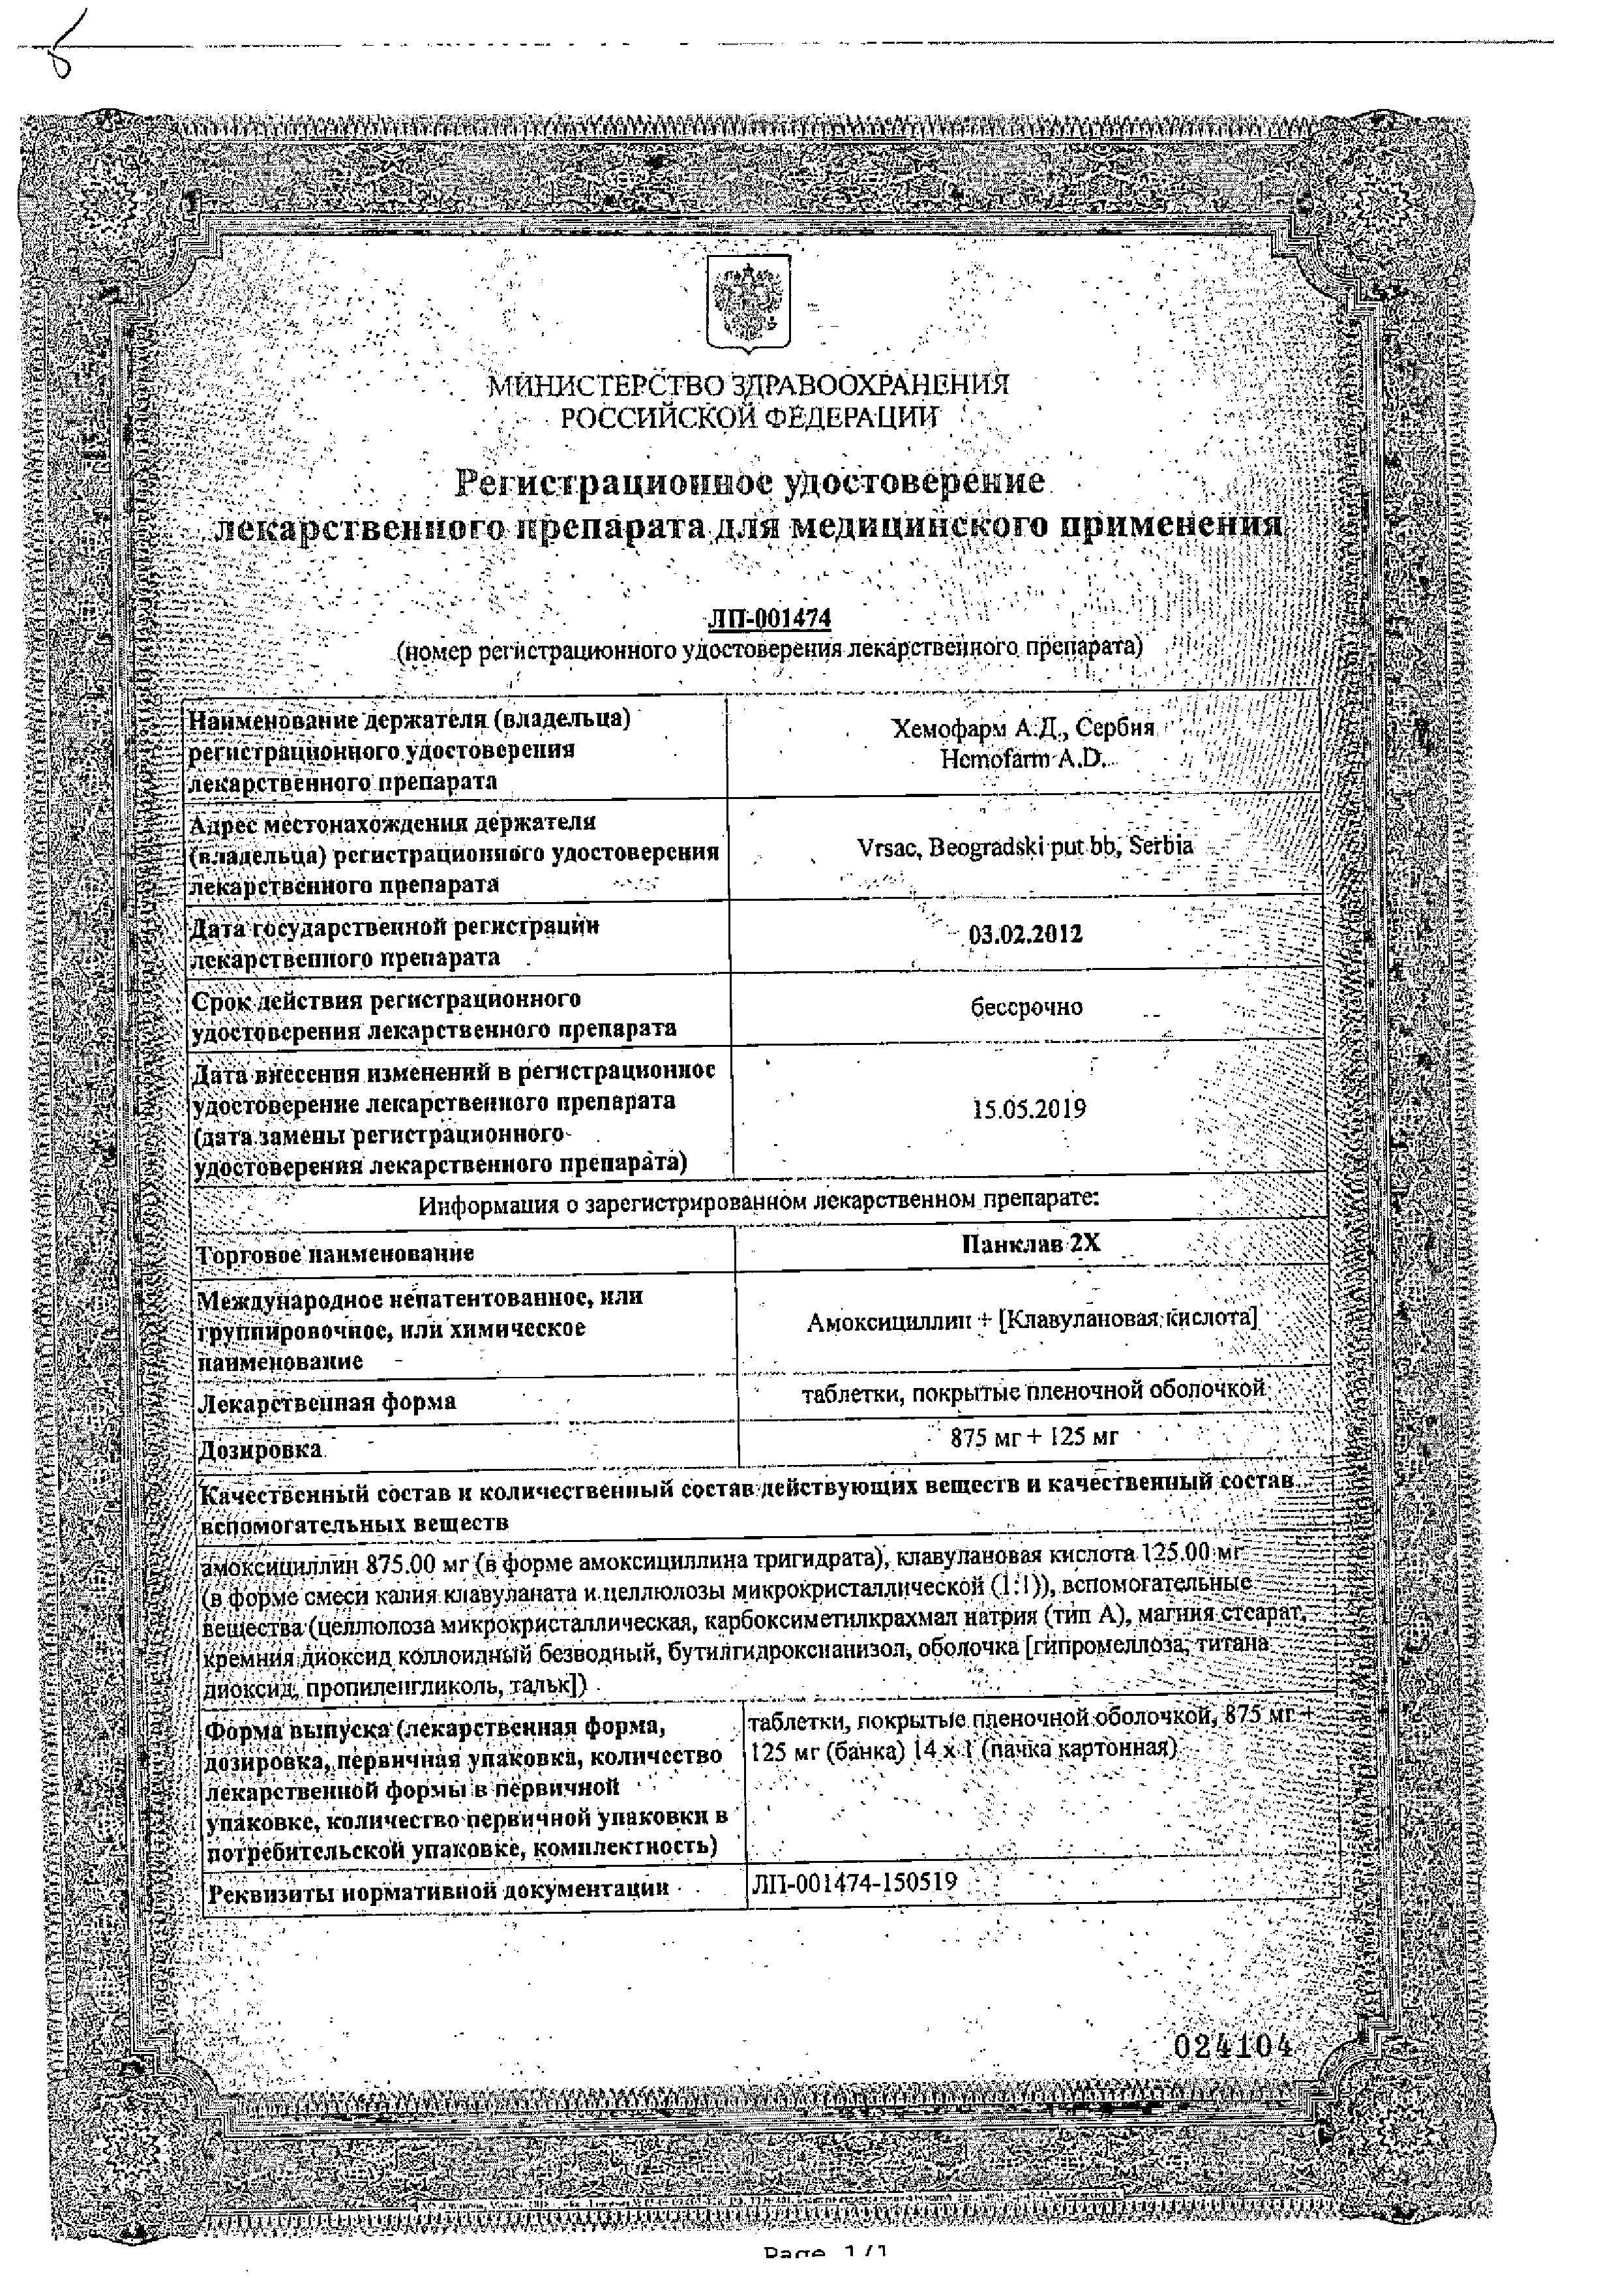 Панклав 2Х сертификат